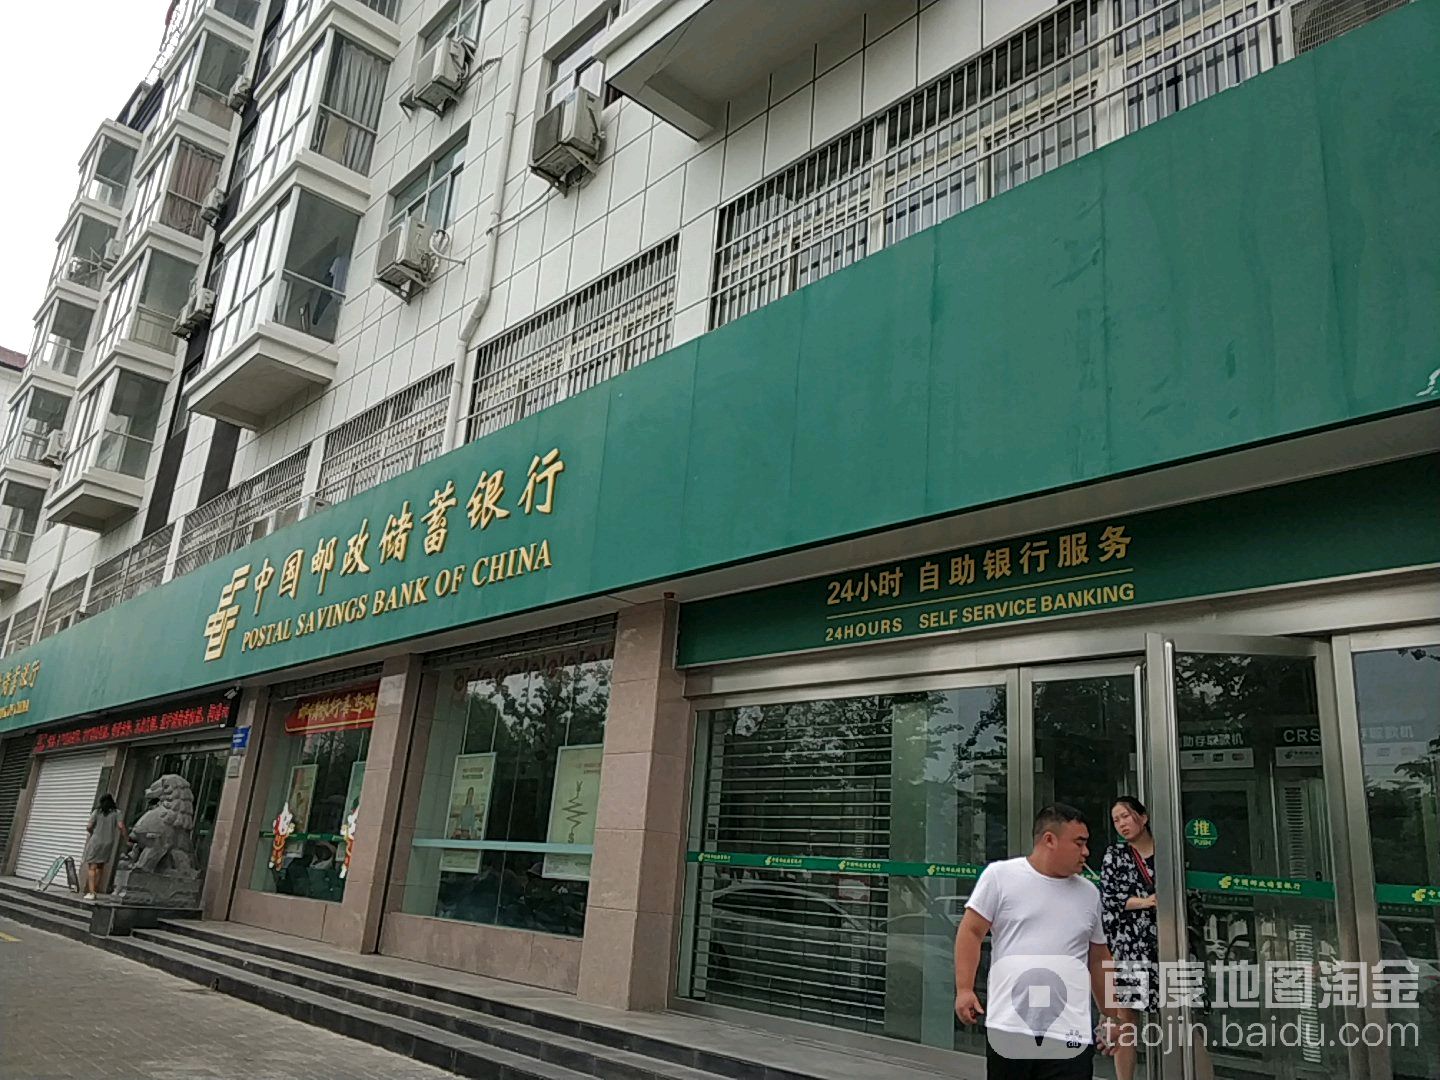 中國郵政儲蓄銀行24小時自助銀行(人民路支行)